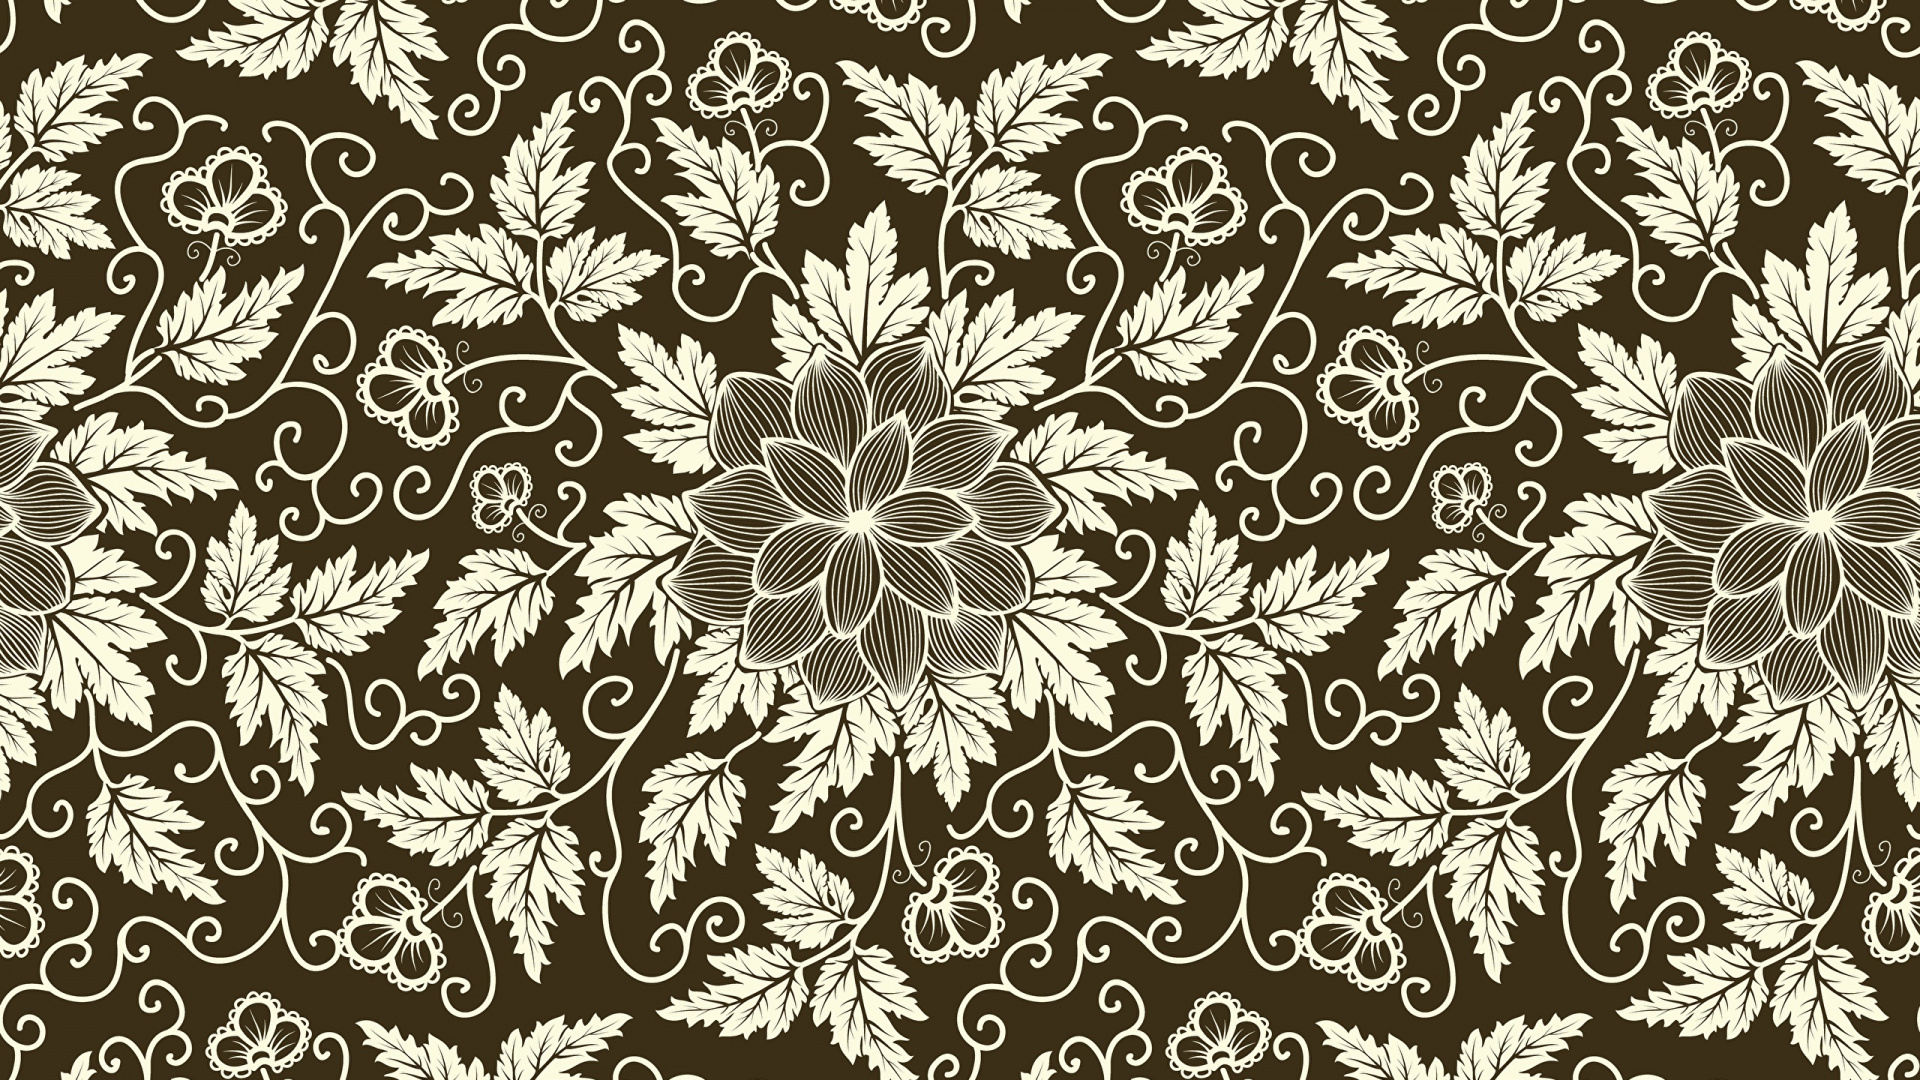 Textile Floral Noir et Blanc. Wallpaper in 1920x1080 Resolution